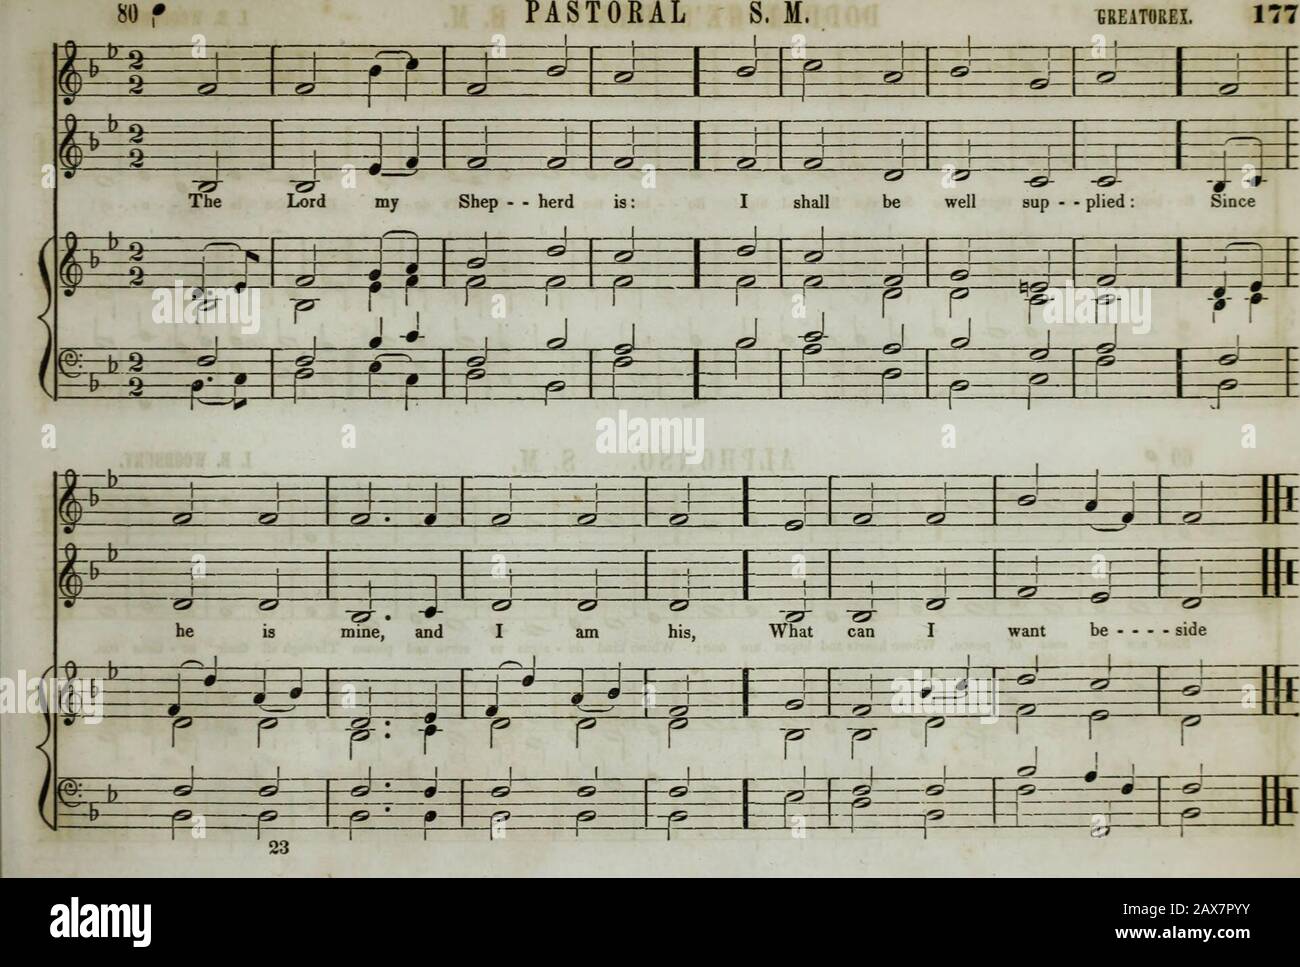 La collezione di musica della Boston Musical Education Society : composta da psalm originali e brani di inno, brani selezionati, canti, &c.; comprese composizioni adattate al servizio della Chiesa episcopale protestante . Foto Stock